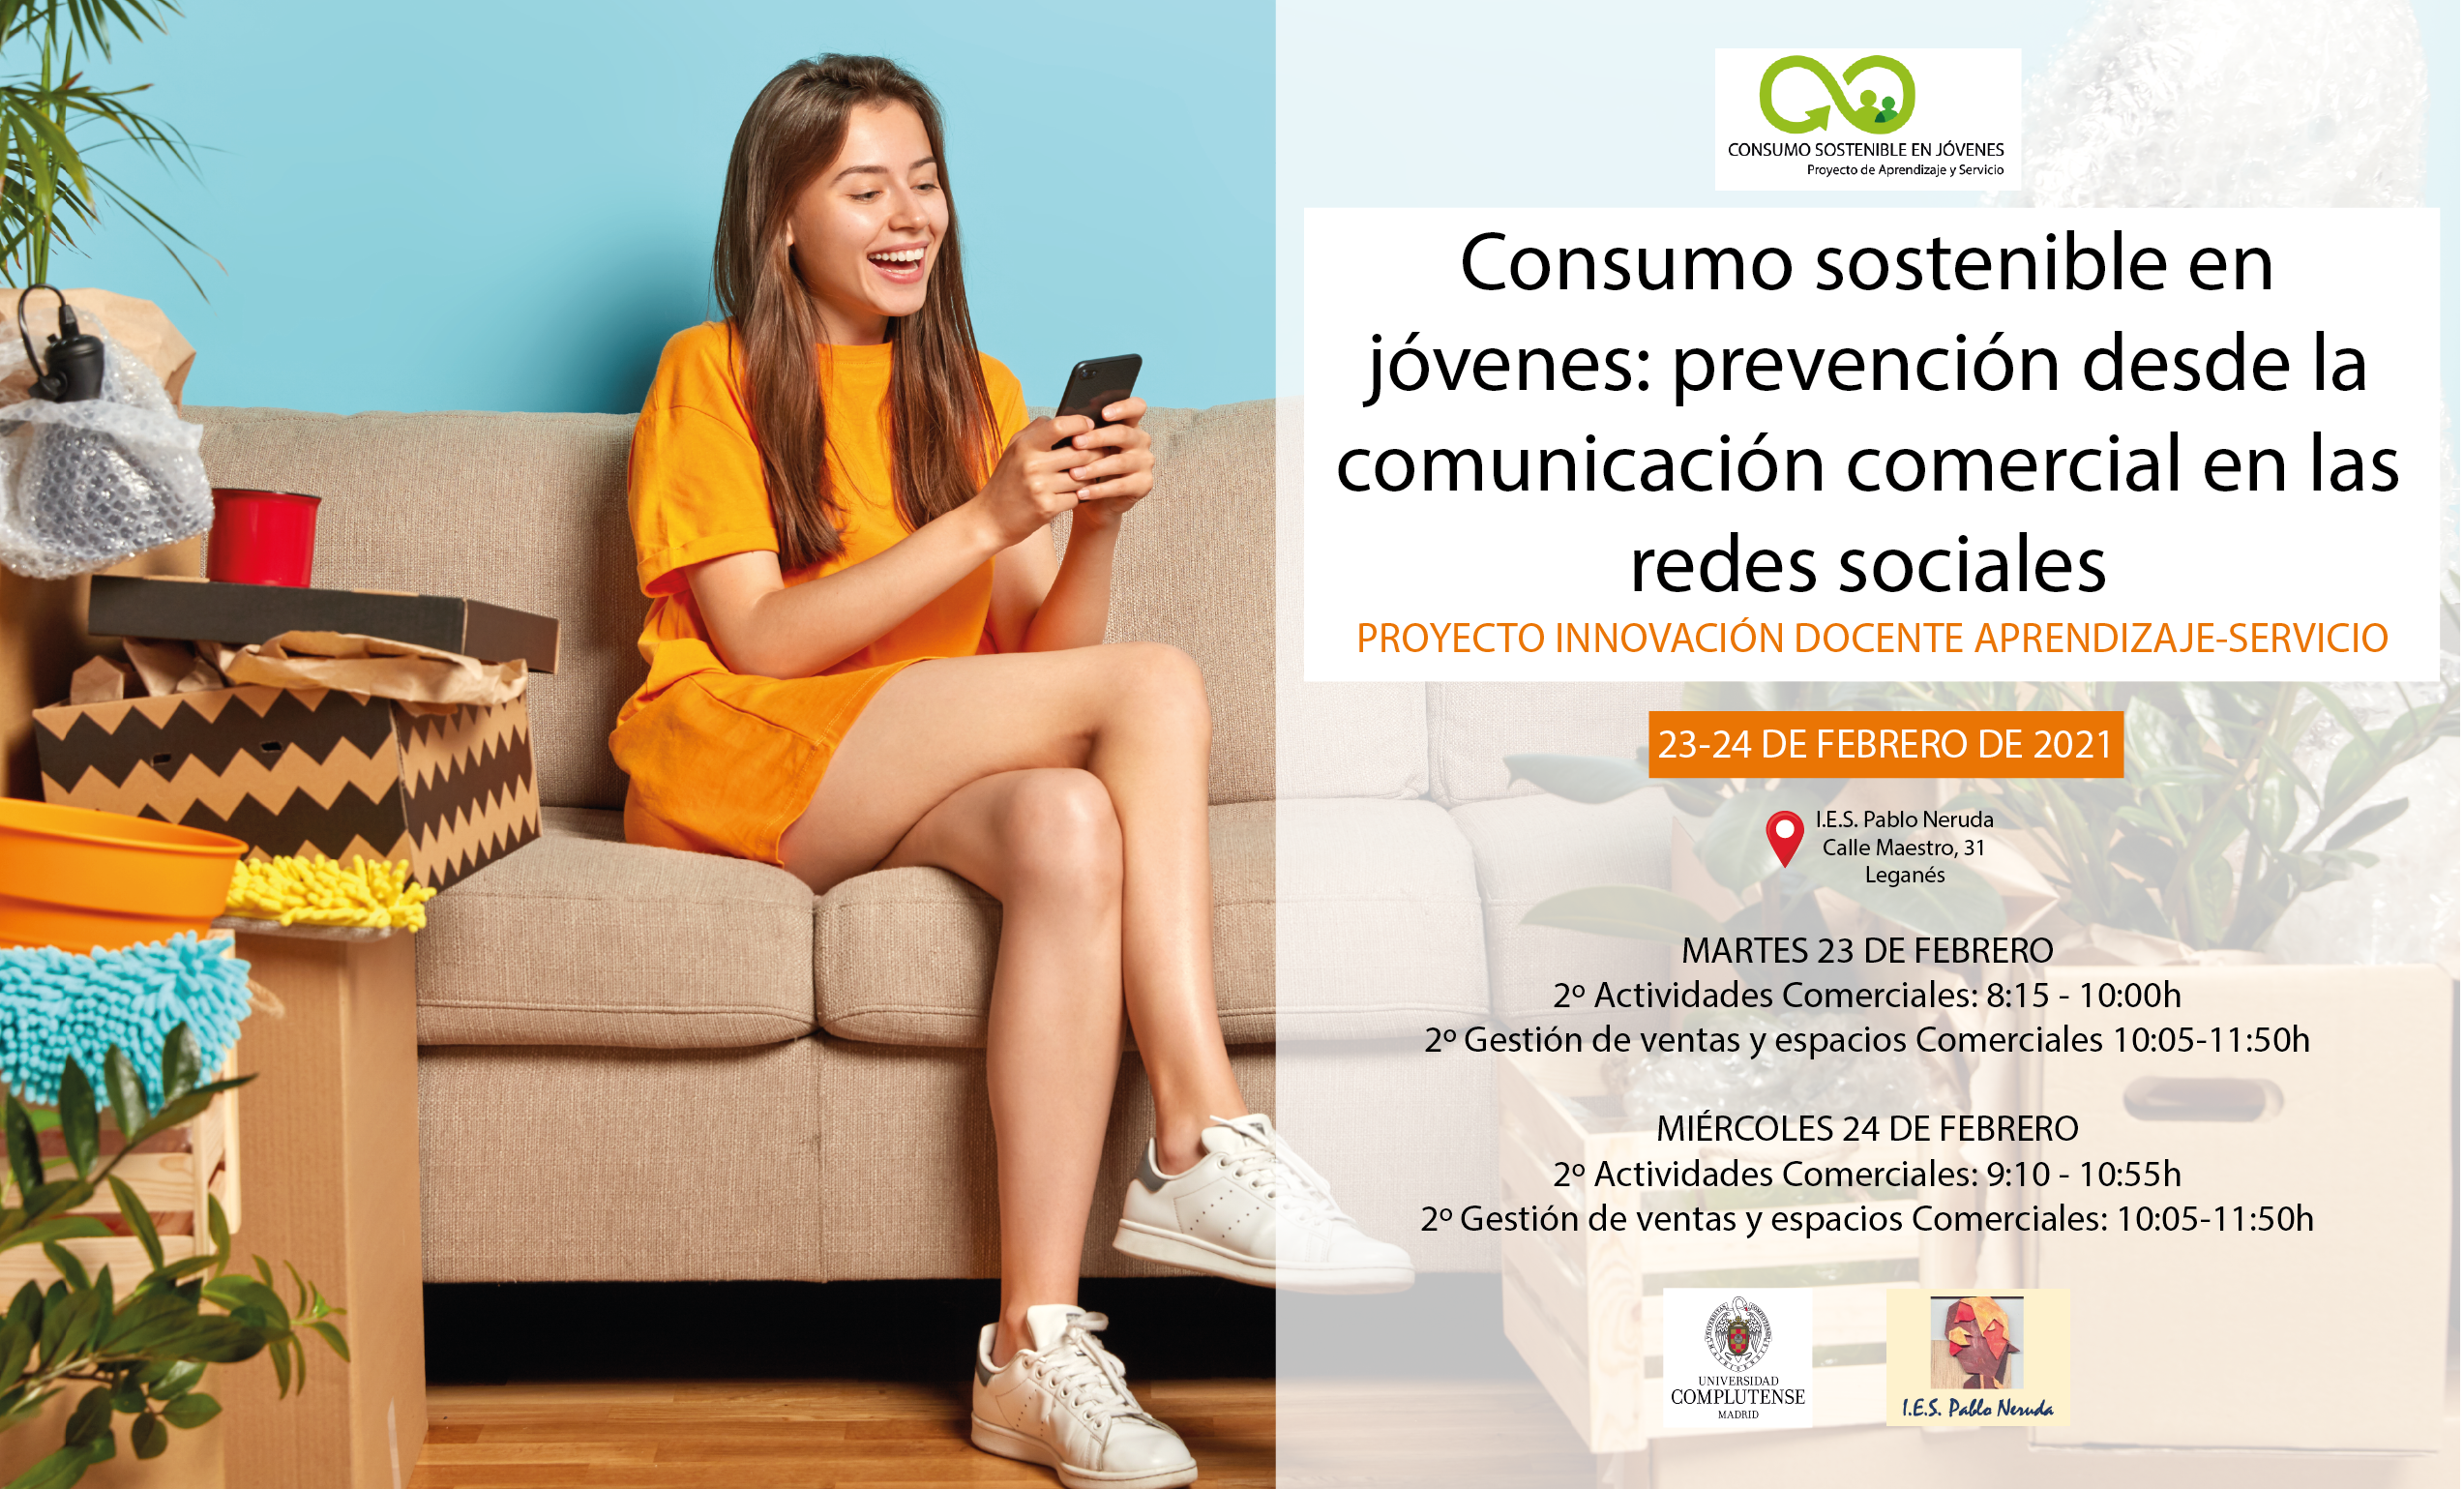 Consumo sostenible en jóvenes: prevención desde la comunicación comercial en las redes sociales